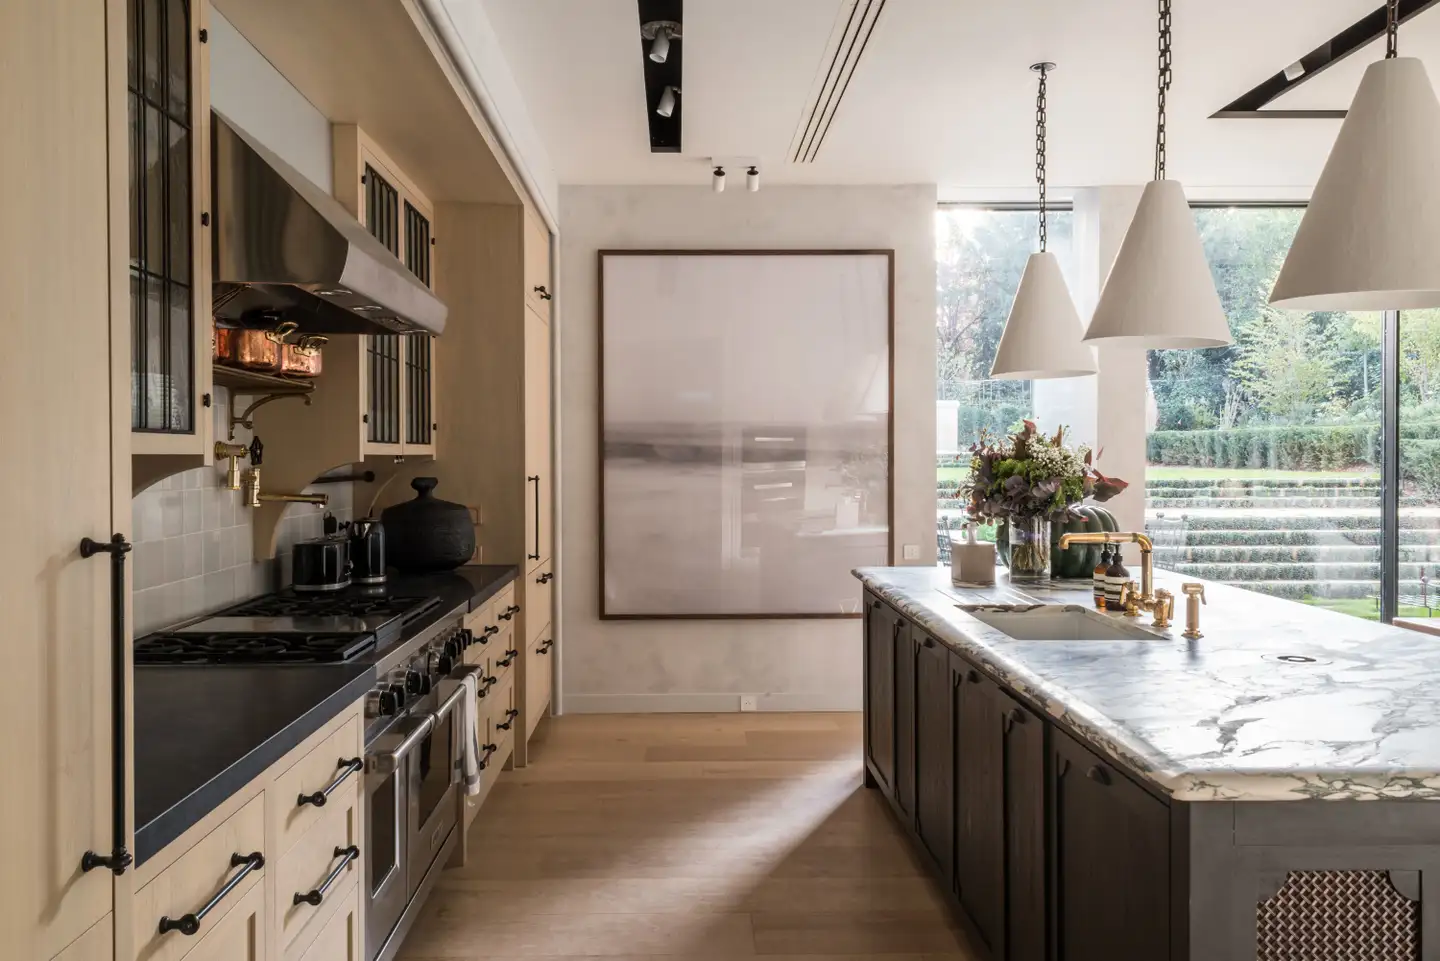 Modern kitchen in beige tones with a marble kitchen island